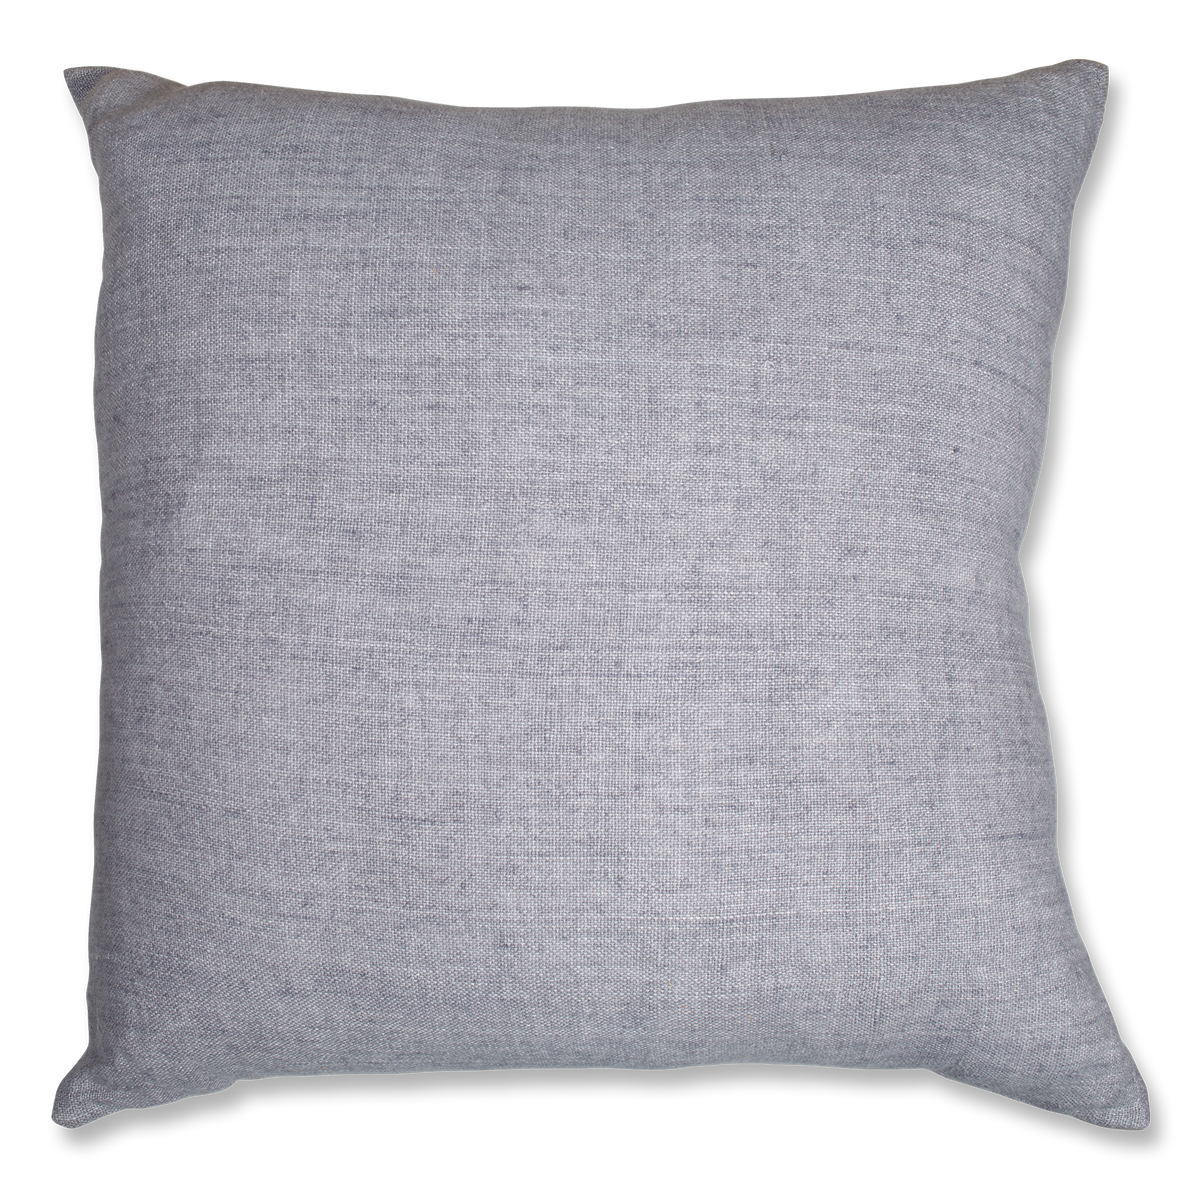 Heavyweight Linen Pillow